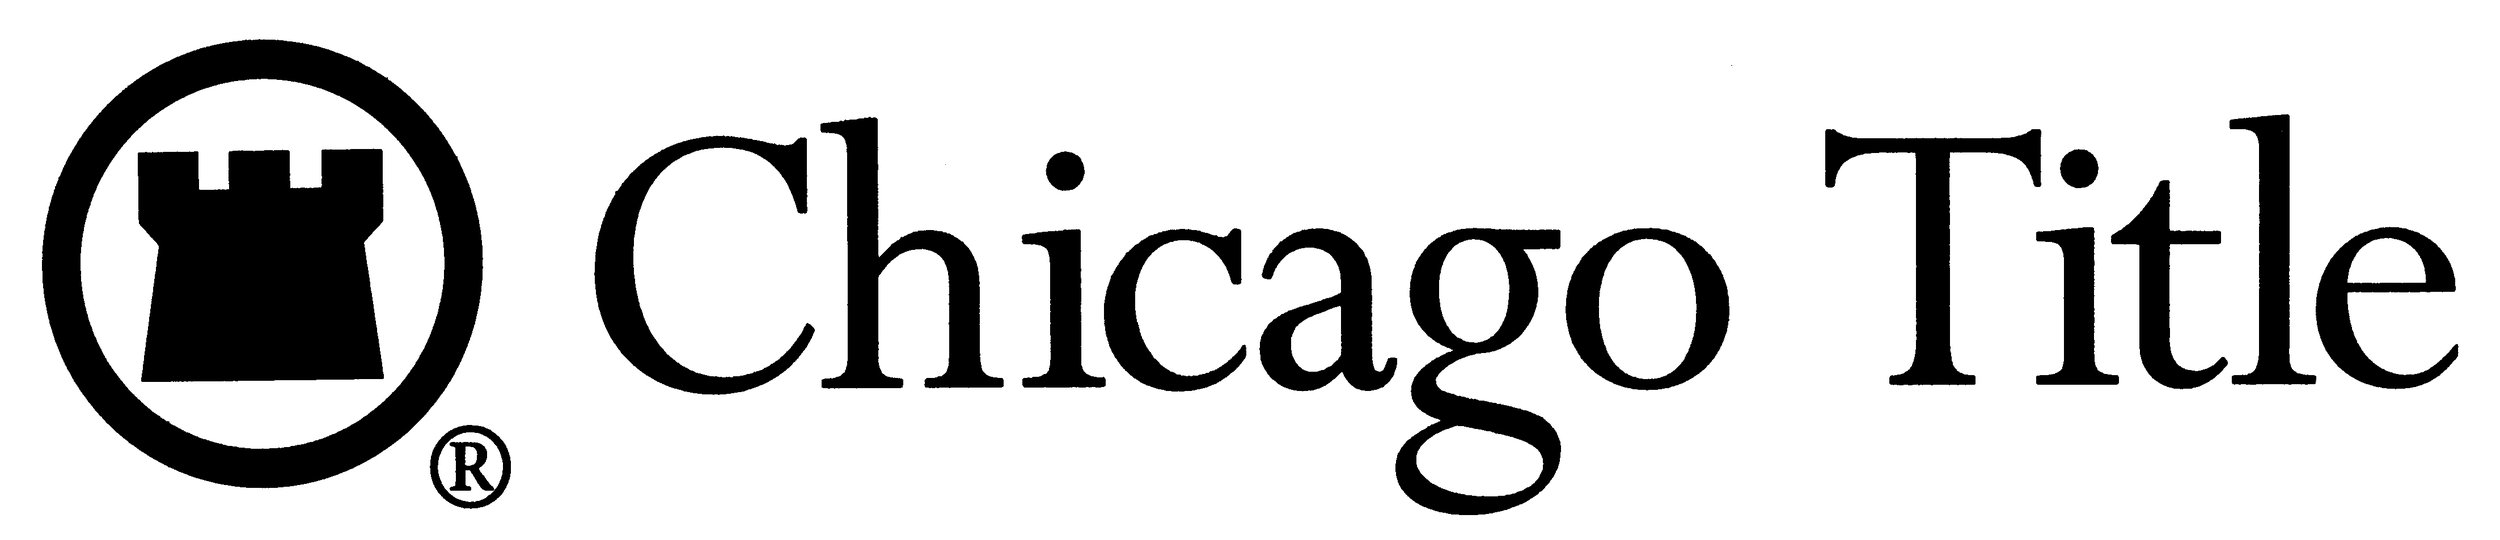 Chicago Title.jpg